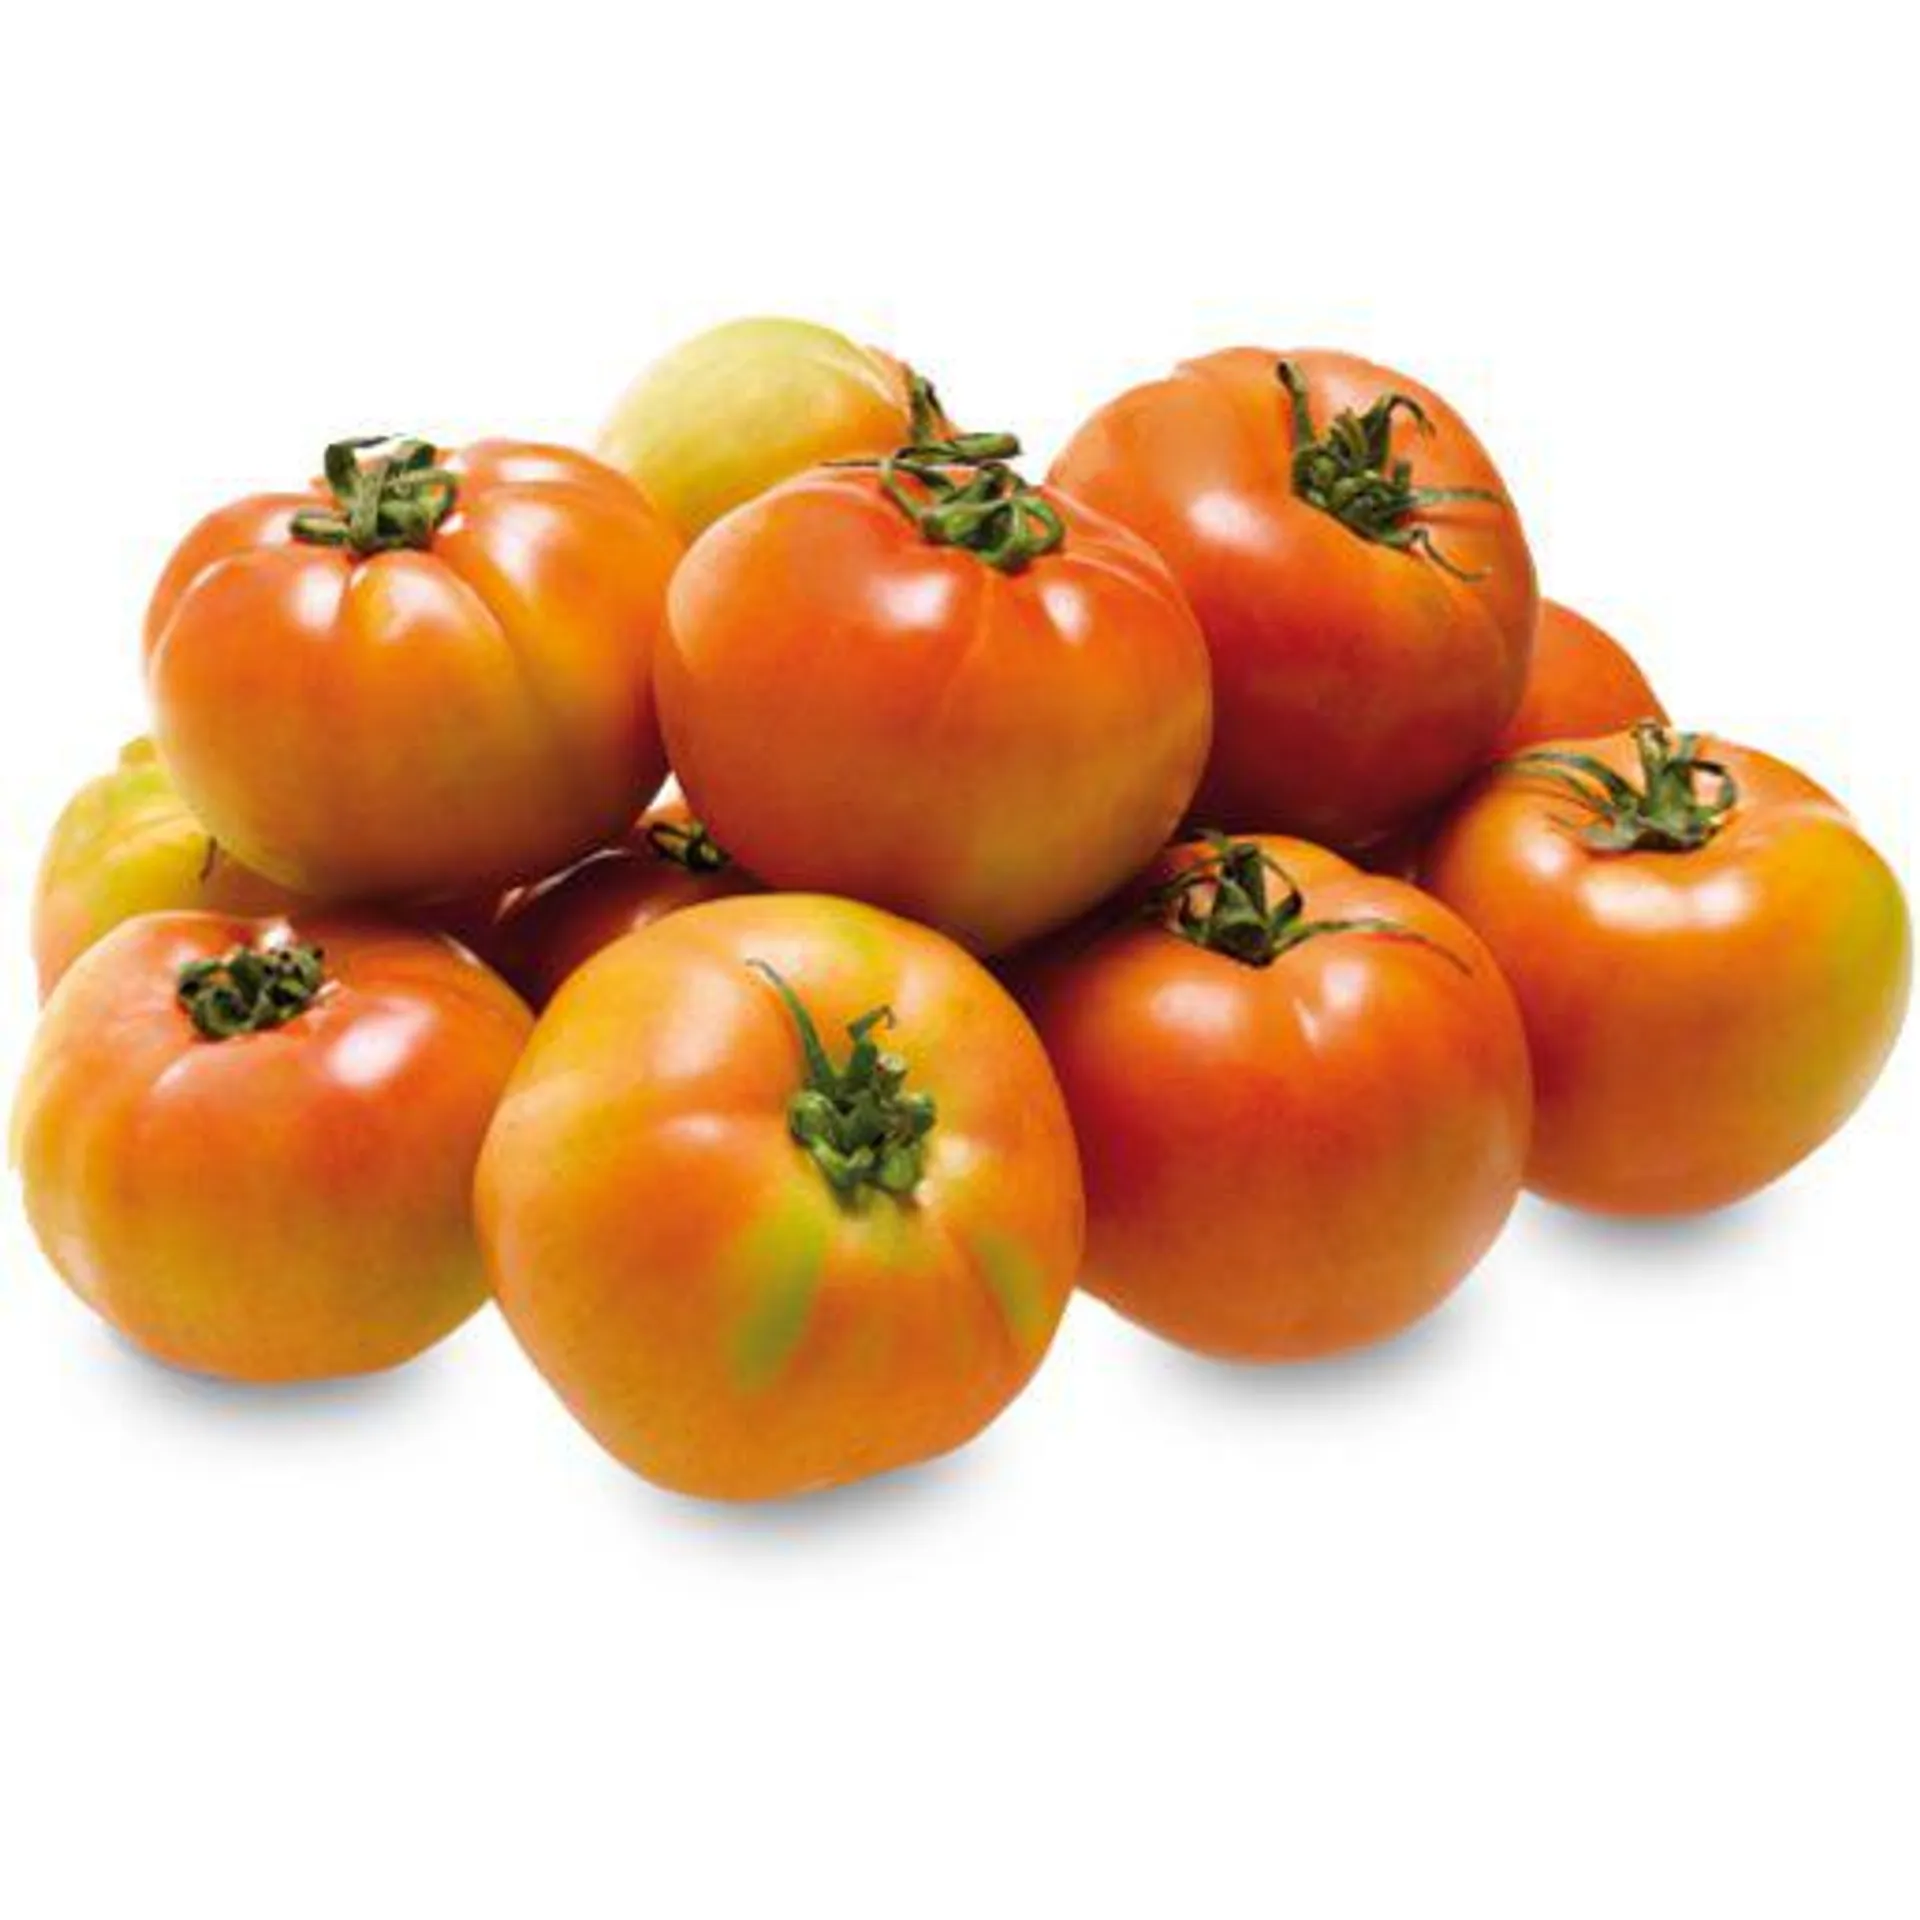 Tomate (1 un = 210 g aprox)